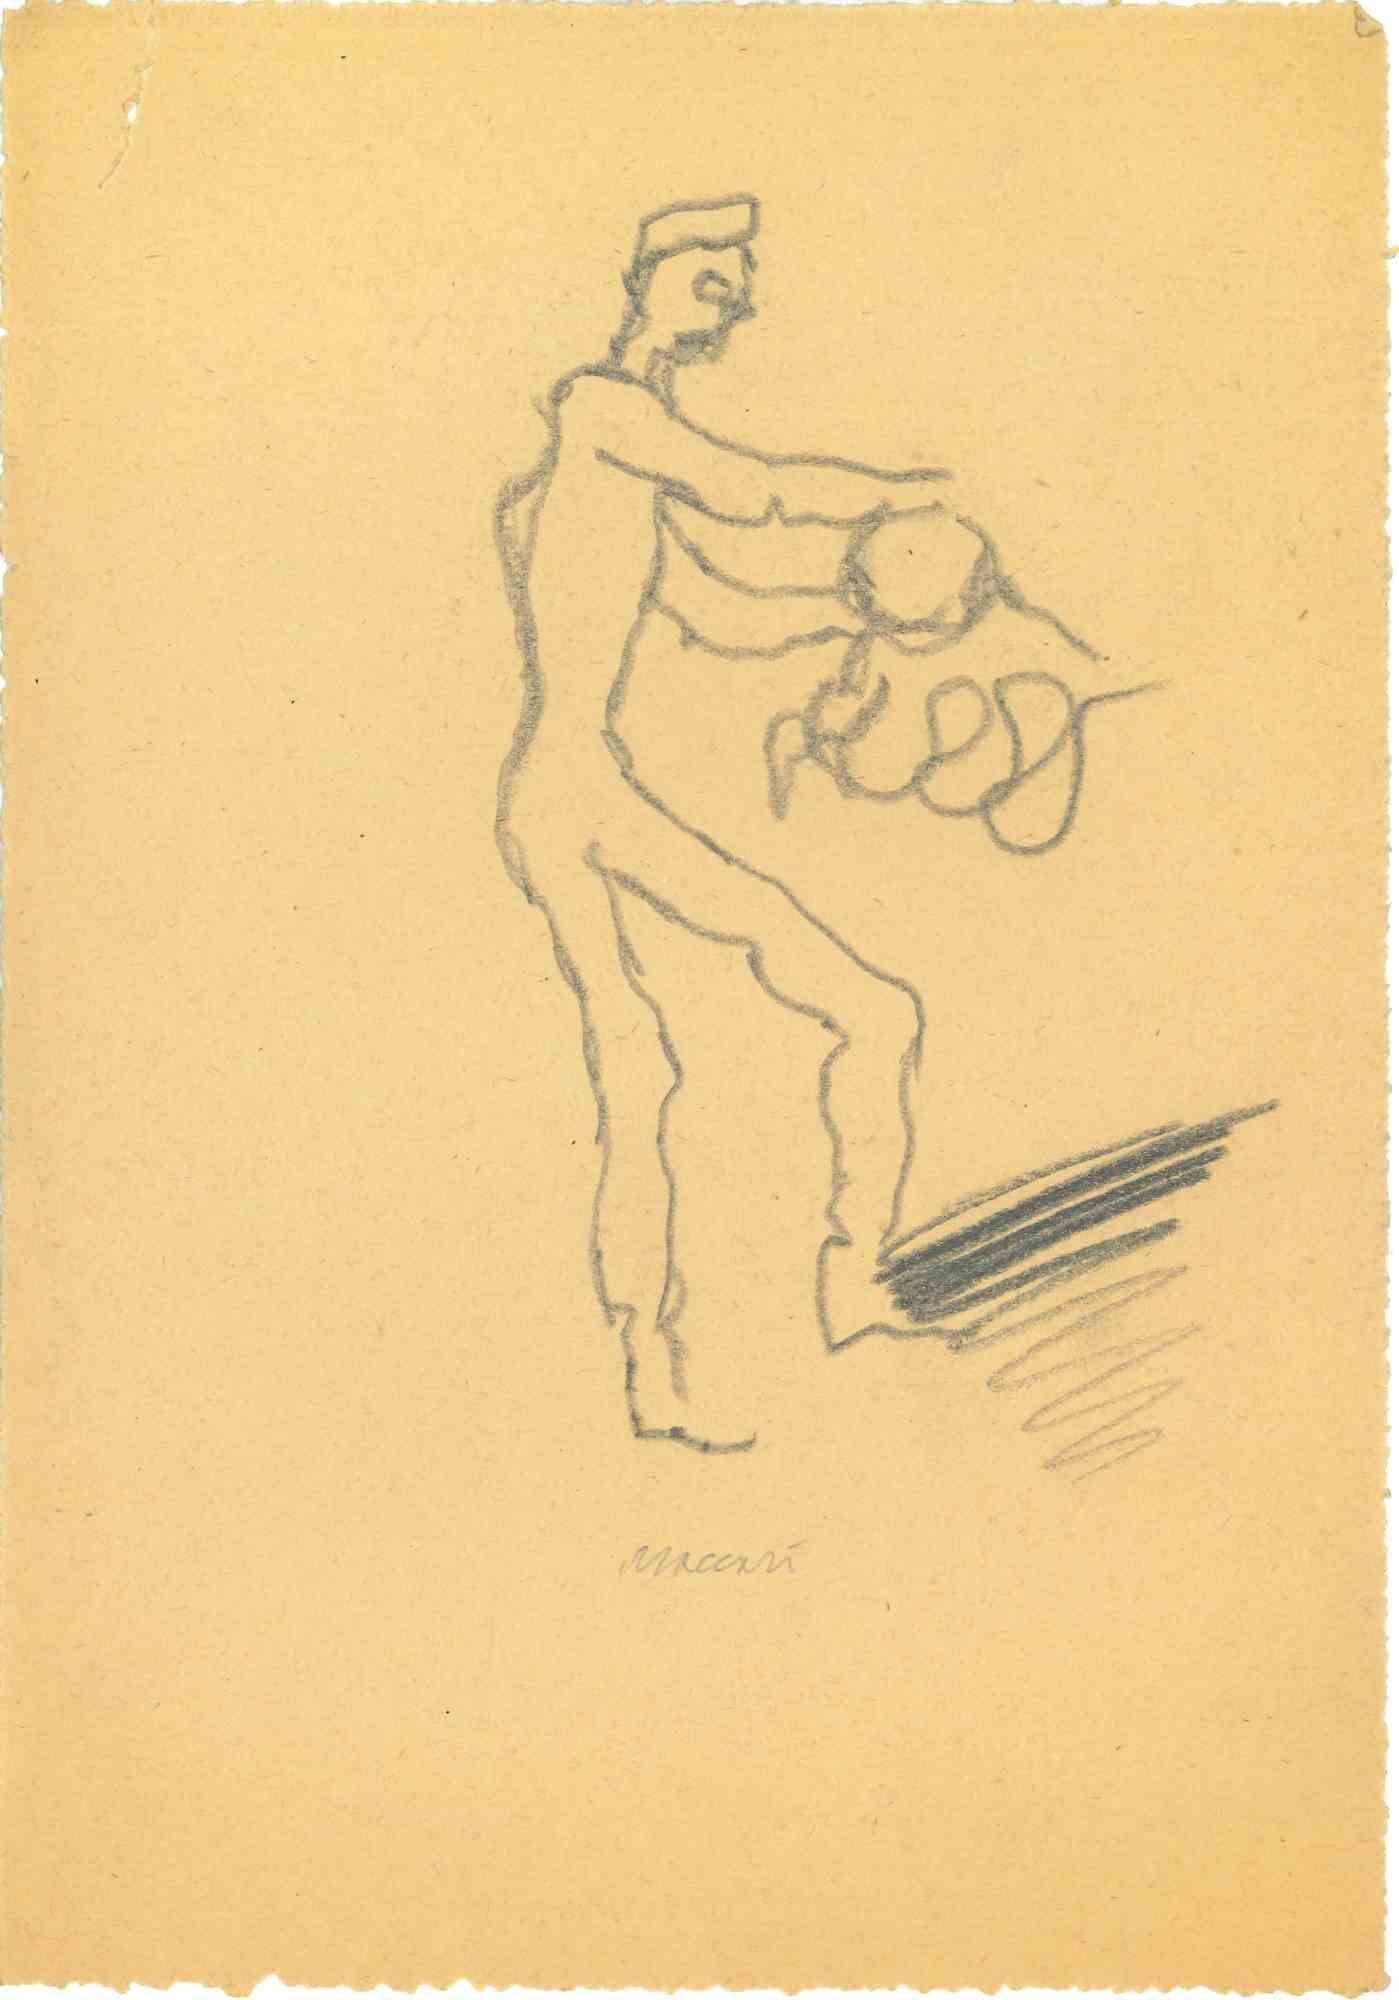 Playing est un dessin au fusain réalisé par Mino Maccari (1924-1989) au milieu du 20e siècle.

Signé à la main.

Bon état avec de légères rousseurs.

Mino Maccari (Sienne, 1924-Rome, 16 juin 1989) est un écrivain, peintre, graveur et journaliste